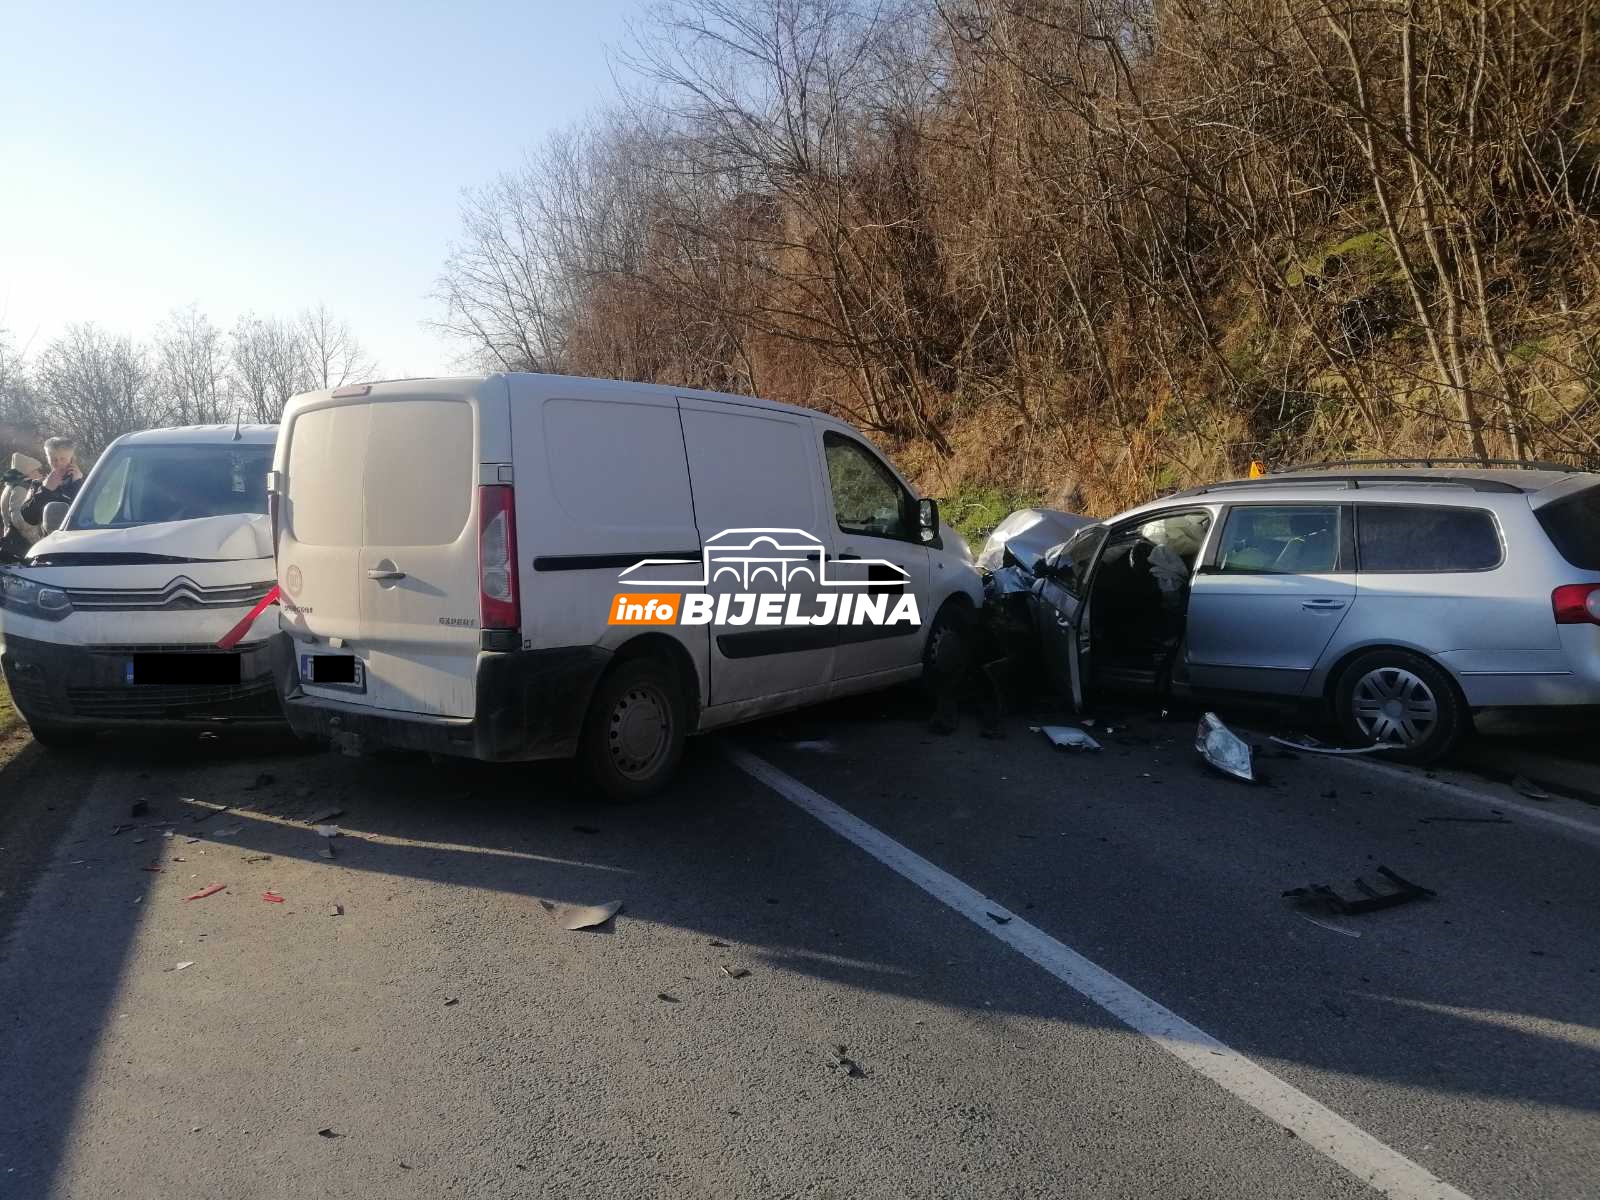 Nezgoda na putu Bijeljina - Zvornik, dvoje povrijeđenih u sudaru tri vozila  (FOTO)